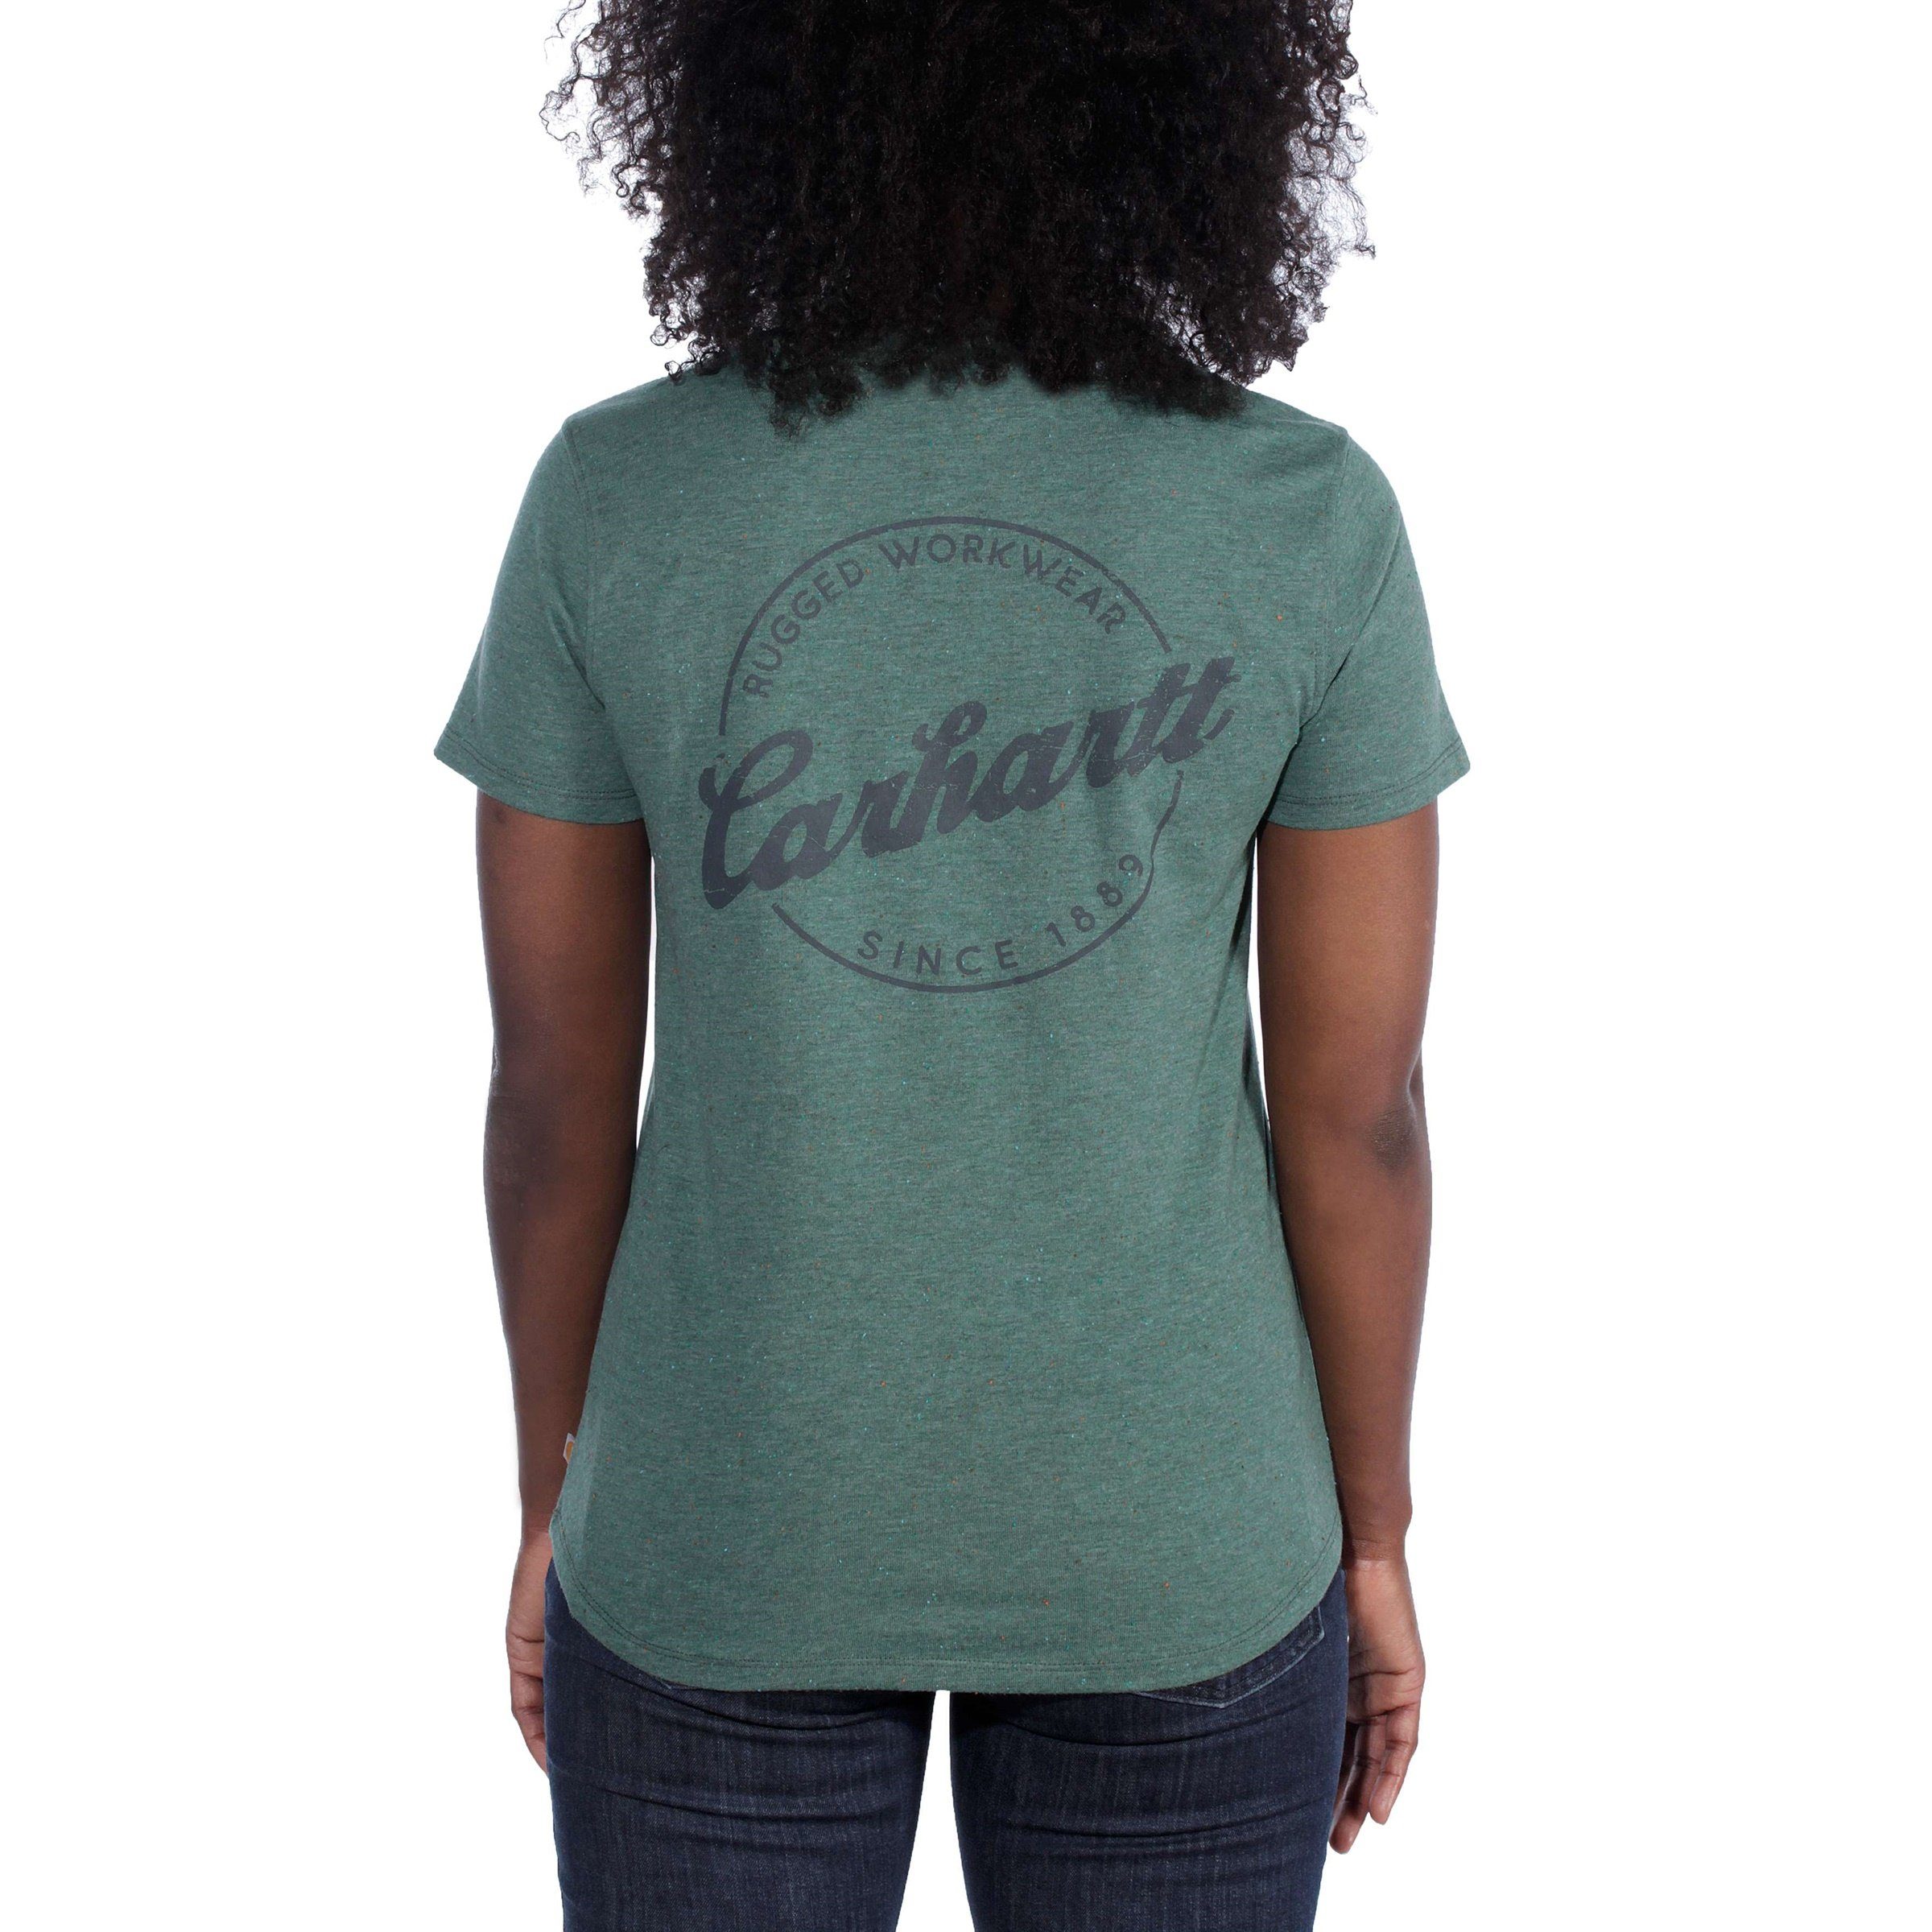 Lockhart Carhartt T-Shirt green nep T-Shirt Carhartt heather Adult Damen Carhartt Graphic musk